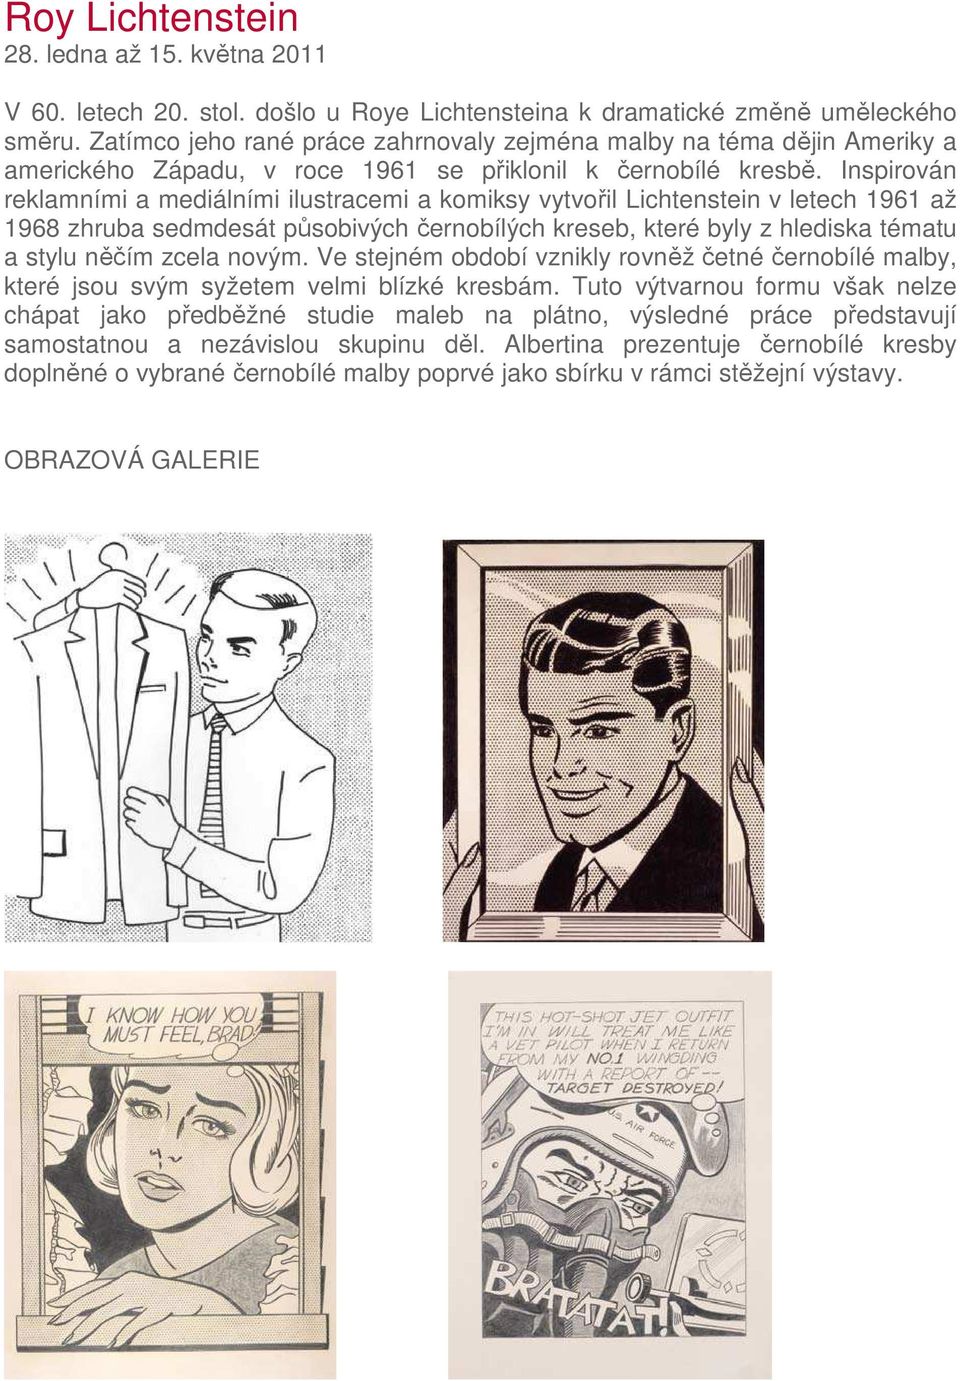 Inspirován reklamními a mediálními ilustracemi a komiksy vytvořil Lichtenstein v letech 1961 až 1968 zhruba sedmdesát působivých černobílých kreseb, které byly z hlediska tématu a stylu něčím zcela